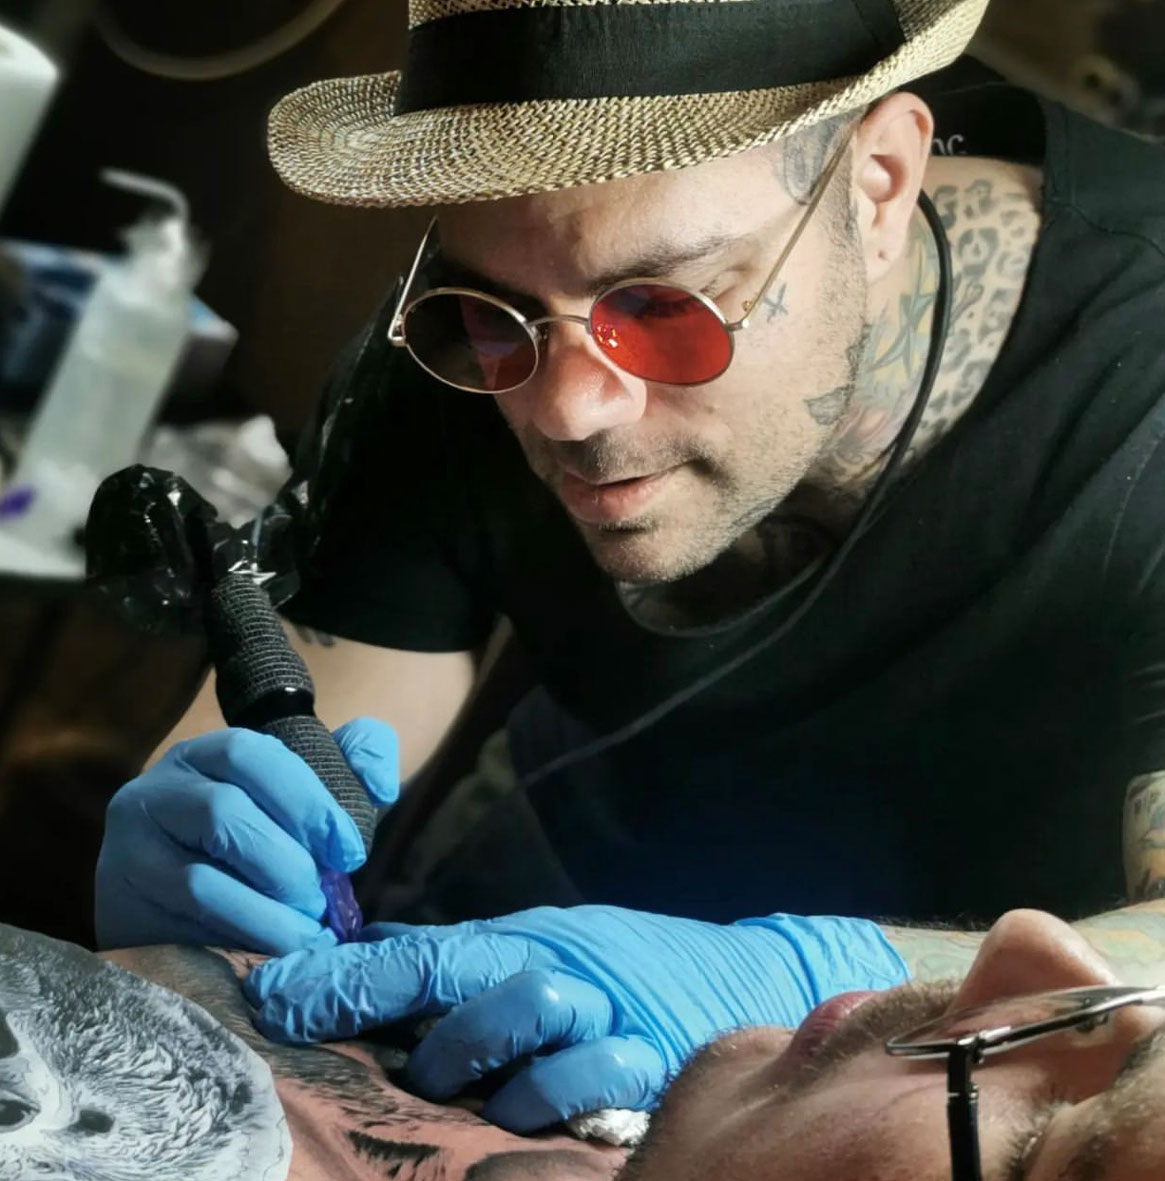 Tattoo Anansi Studio München Munich Haidhausen Pete at work tattooing best colour black and grey realistic artist